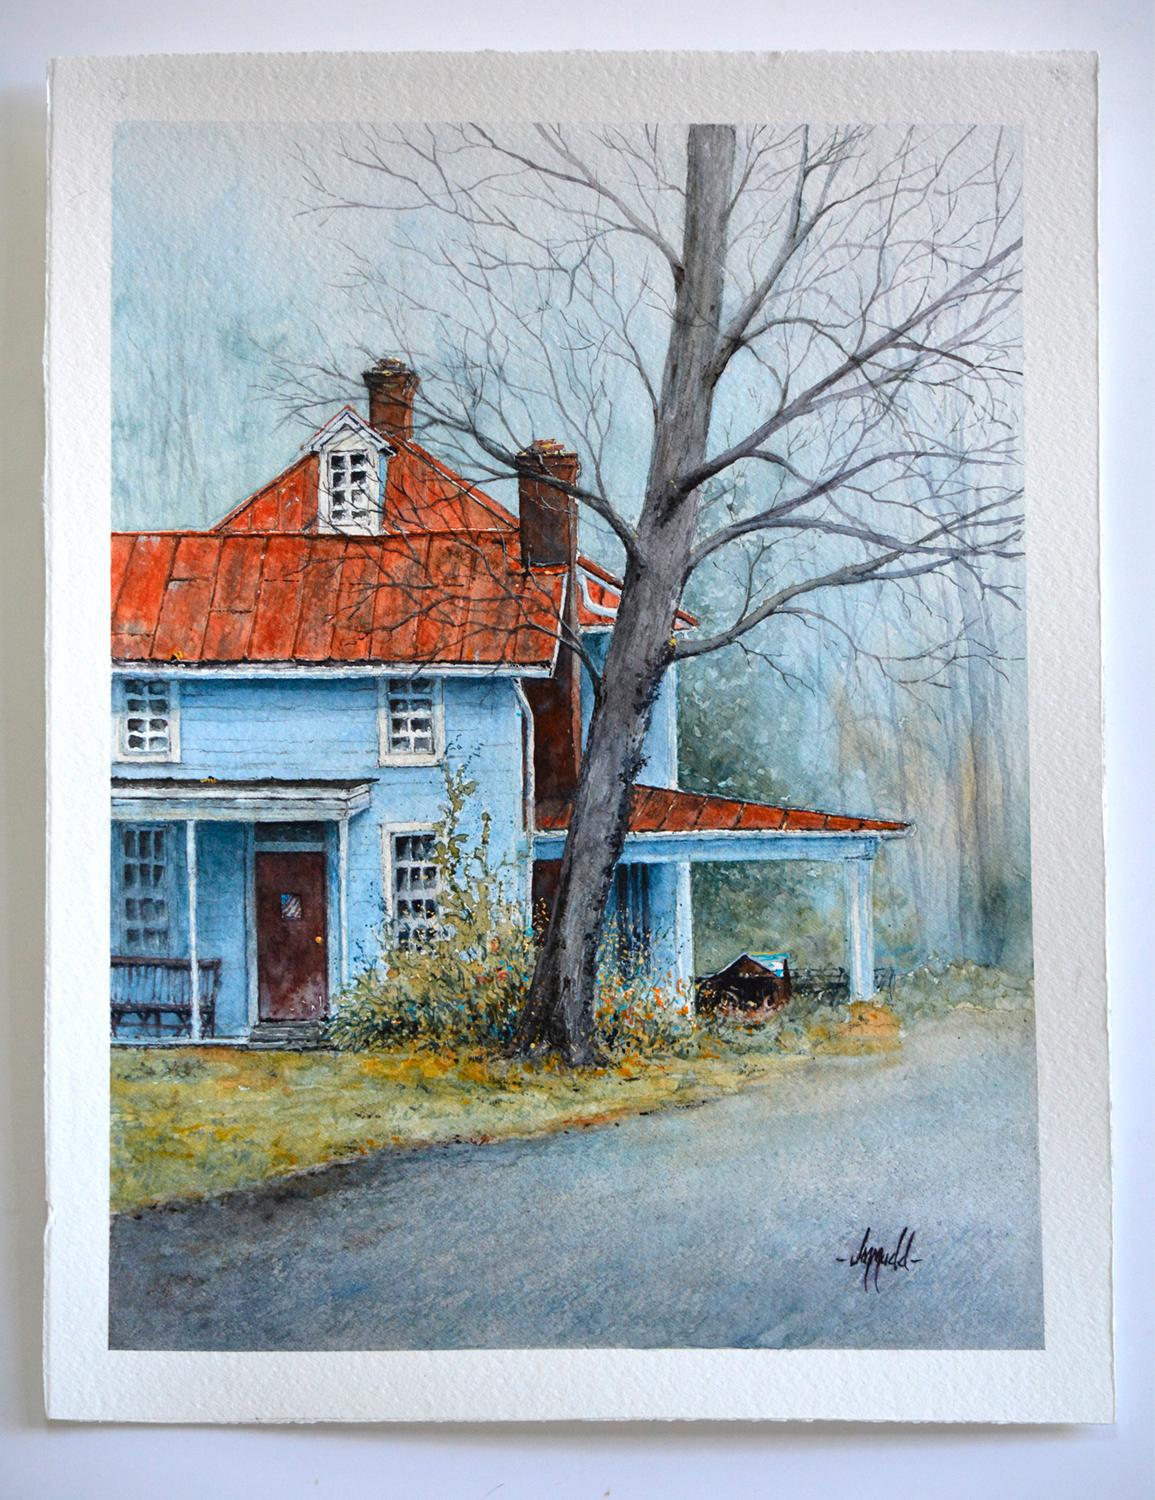 <p>Commentaires de l'artiste<br>L'artiste Judy Mudd présente une belle maison ancienne près de chez elle. La structure est isolée par les développements environnants dans un parc industriel. Elle met en valeur les formes et les textures du bâtiment